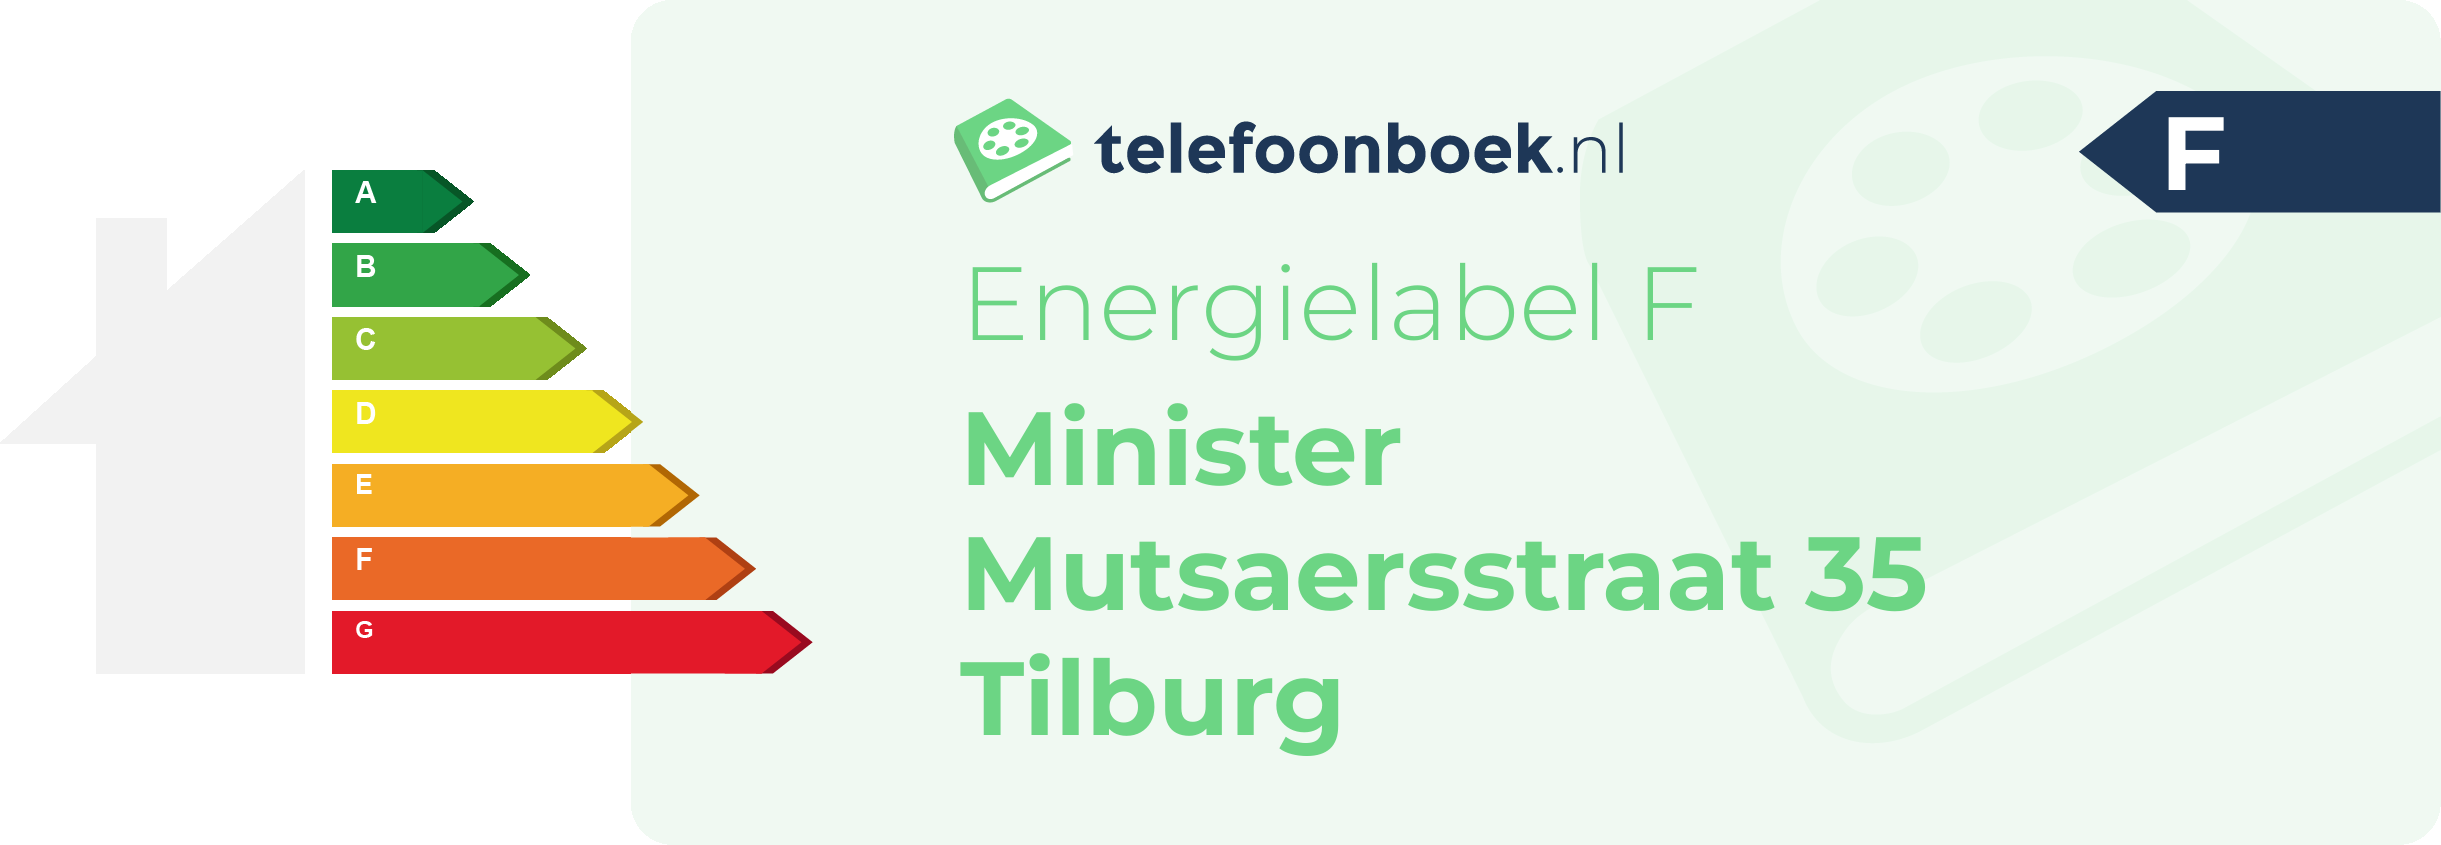 Energielabel Minister Mutsaersstraat 35 Tilburg